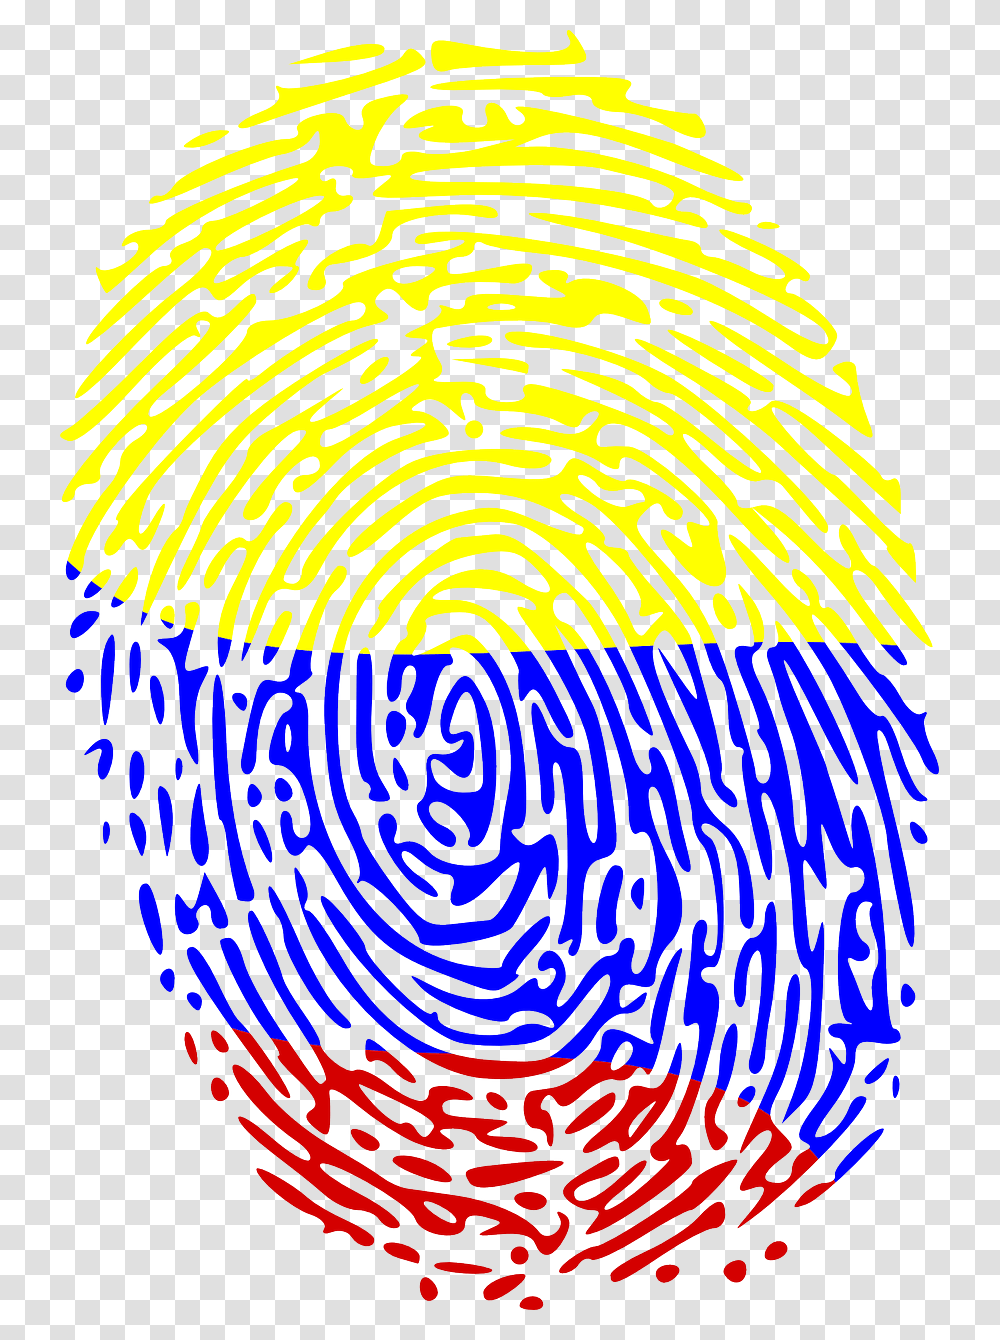 Fingerprint Crime Forensics Free Photo Fingerprint Svg, Spiral, Coil, Number Transparent Png